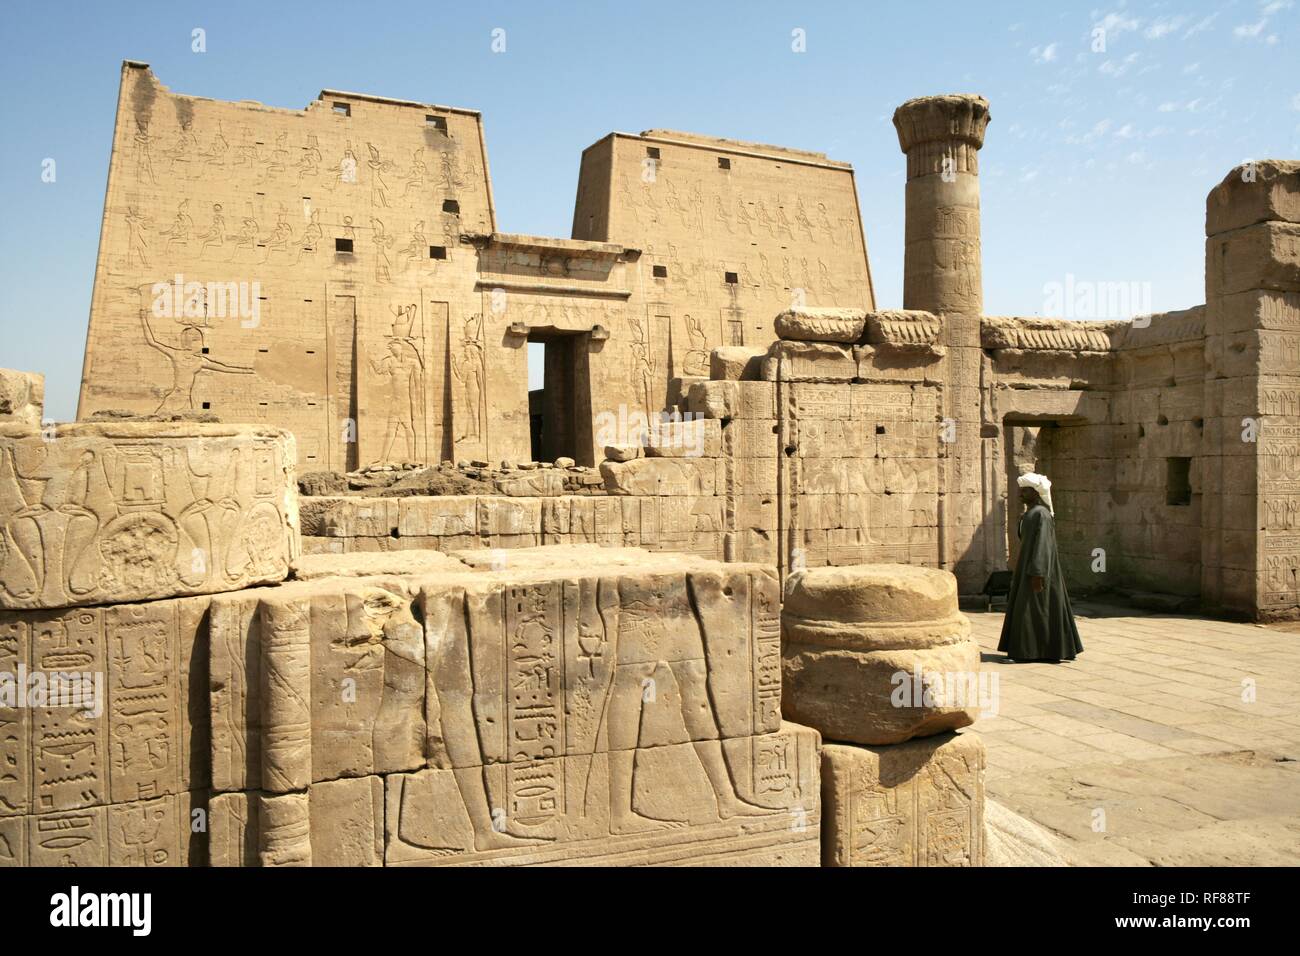 Guard, Temple of Edfu (dedicated to the falcon god Horus), Edfu, Egypt, Africa Stock Photo